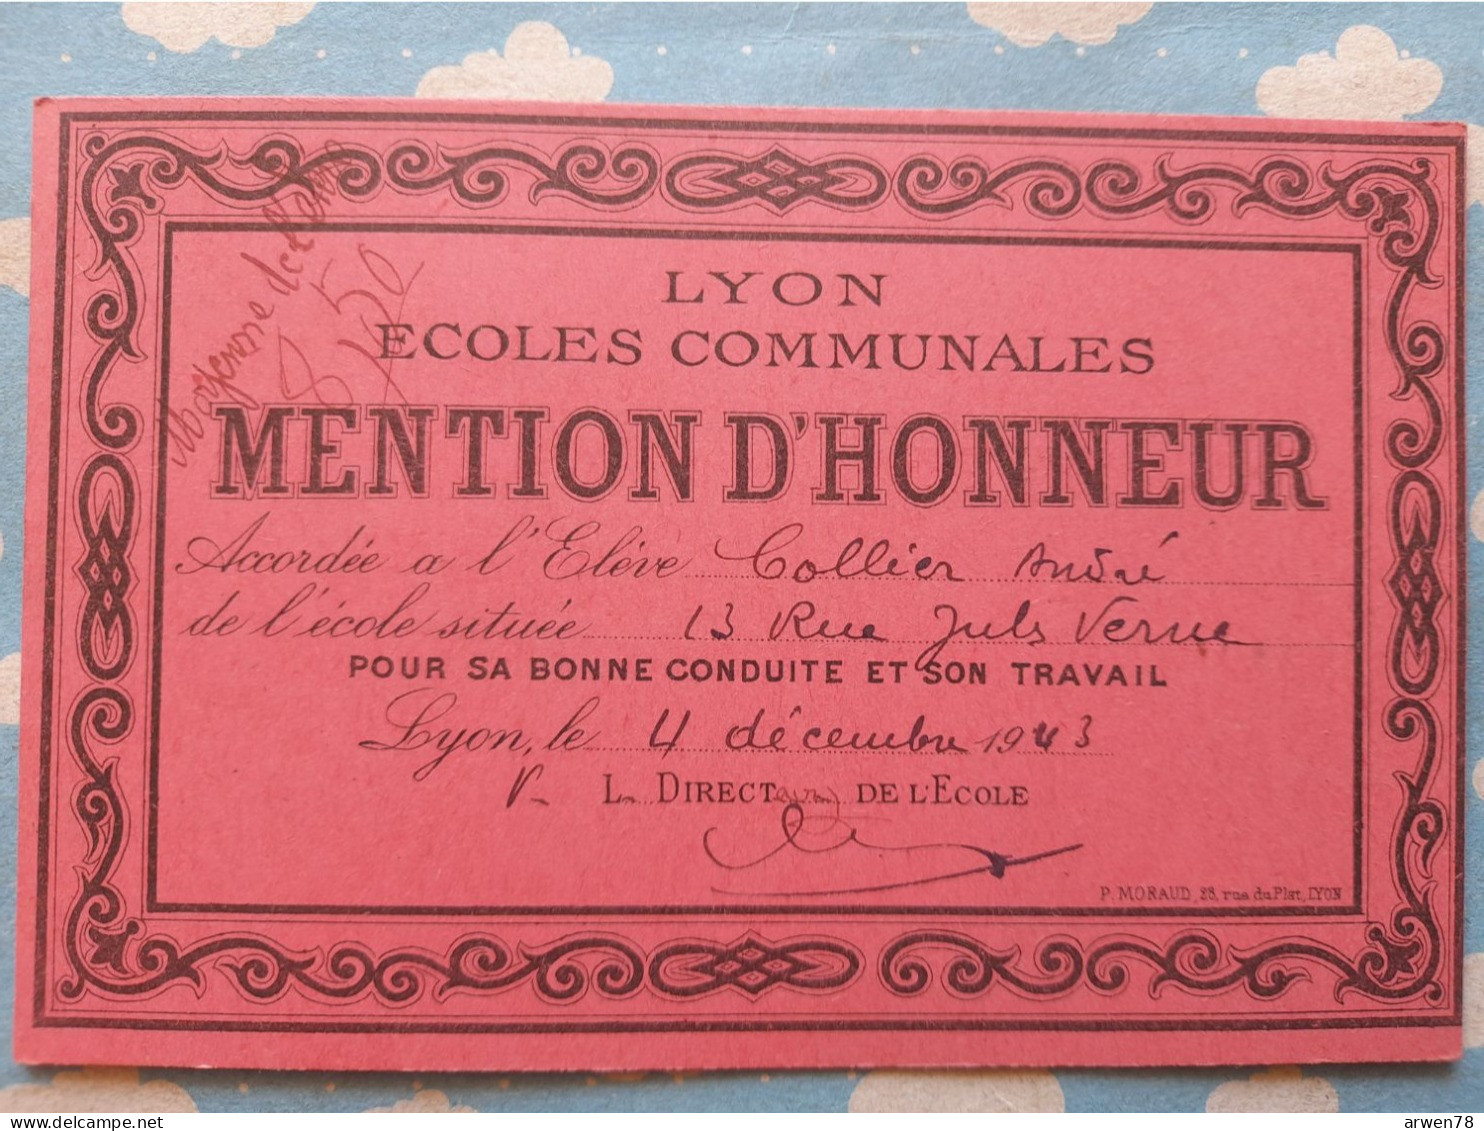 LYON écoles Communales BILLET MENTION D'HONNEUR 4 Decembre 1943 - Diplomas Y Calificaciones Escolares